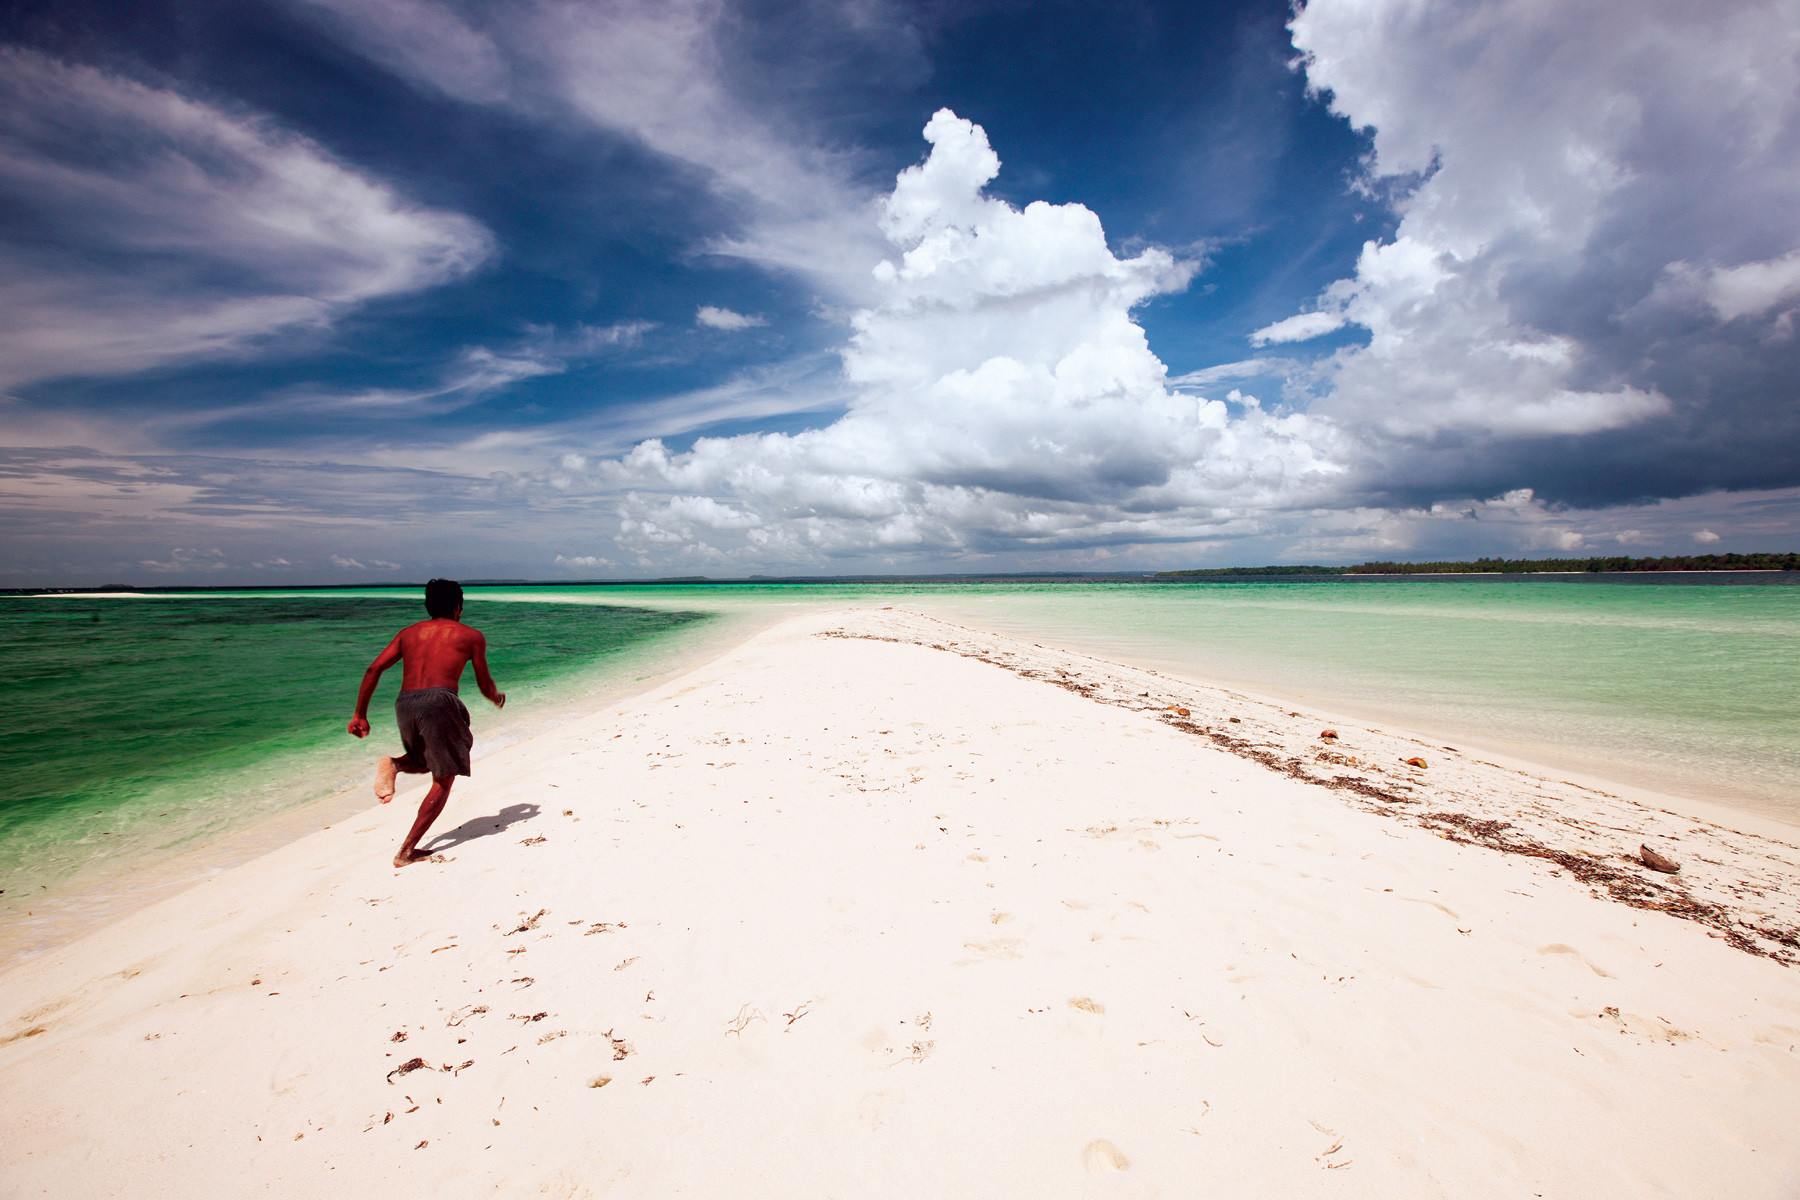 De Kei-archipel, in het zuidoosten van de Molukken, steelt de show met zijn stranden. Foto: Malou van Breevoort / Columbus Travel